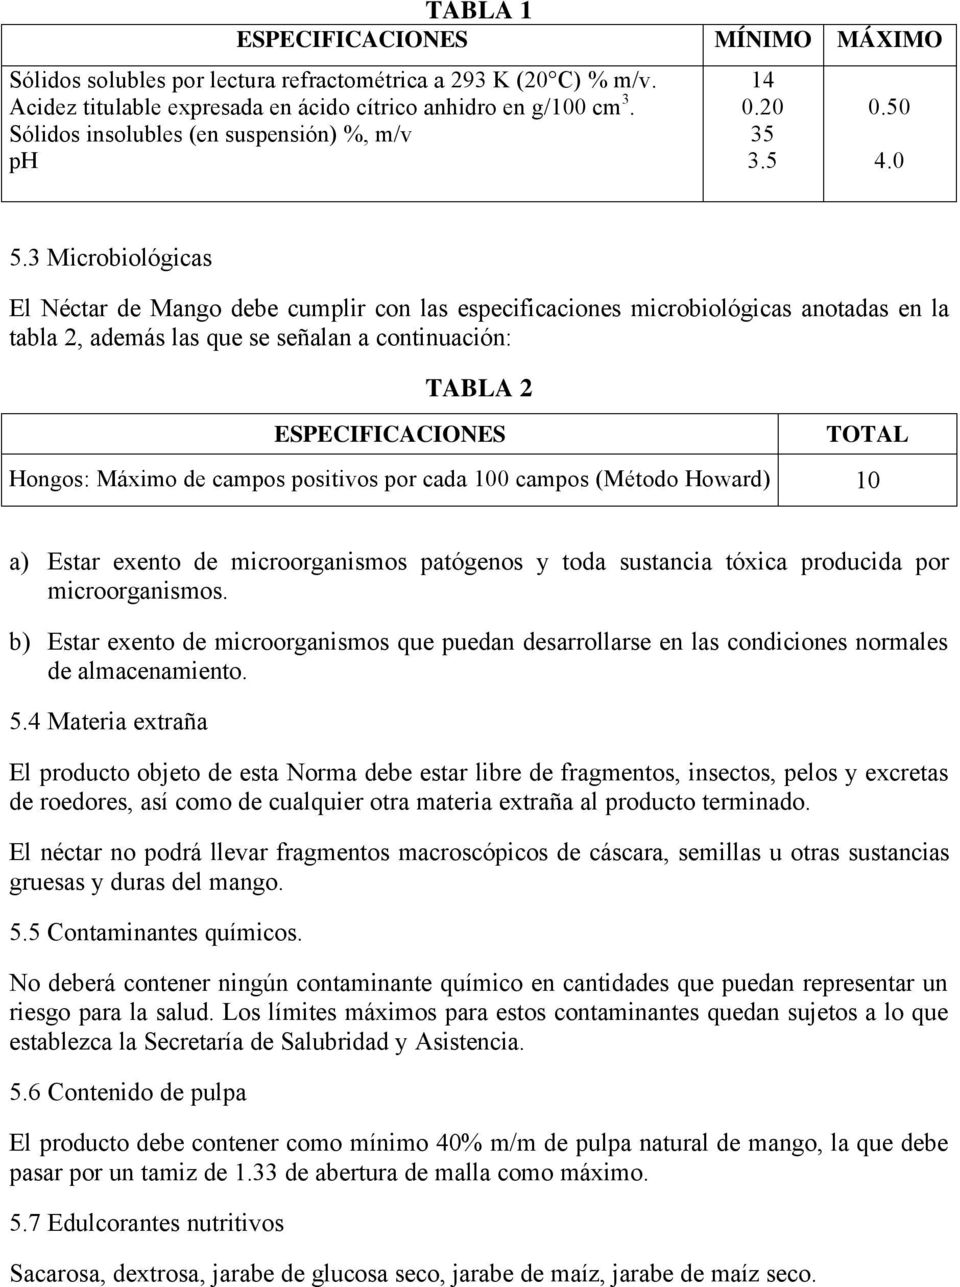 3 Microbiológicas El Néctar de Mango debe cumplir con las especificaciones microbiológicas anotadas en la tabla 2, además las que se señalan a continuación: TABLA 2 ESPECIFICACIONES TOTAL Hongos: